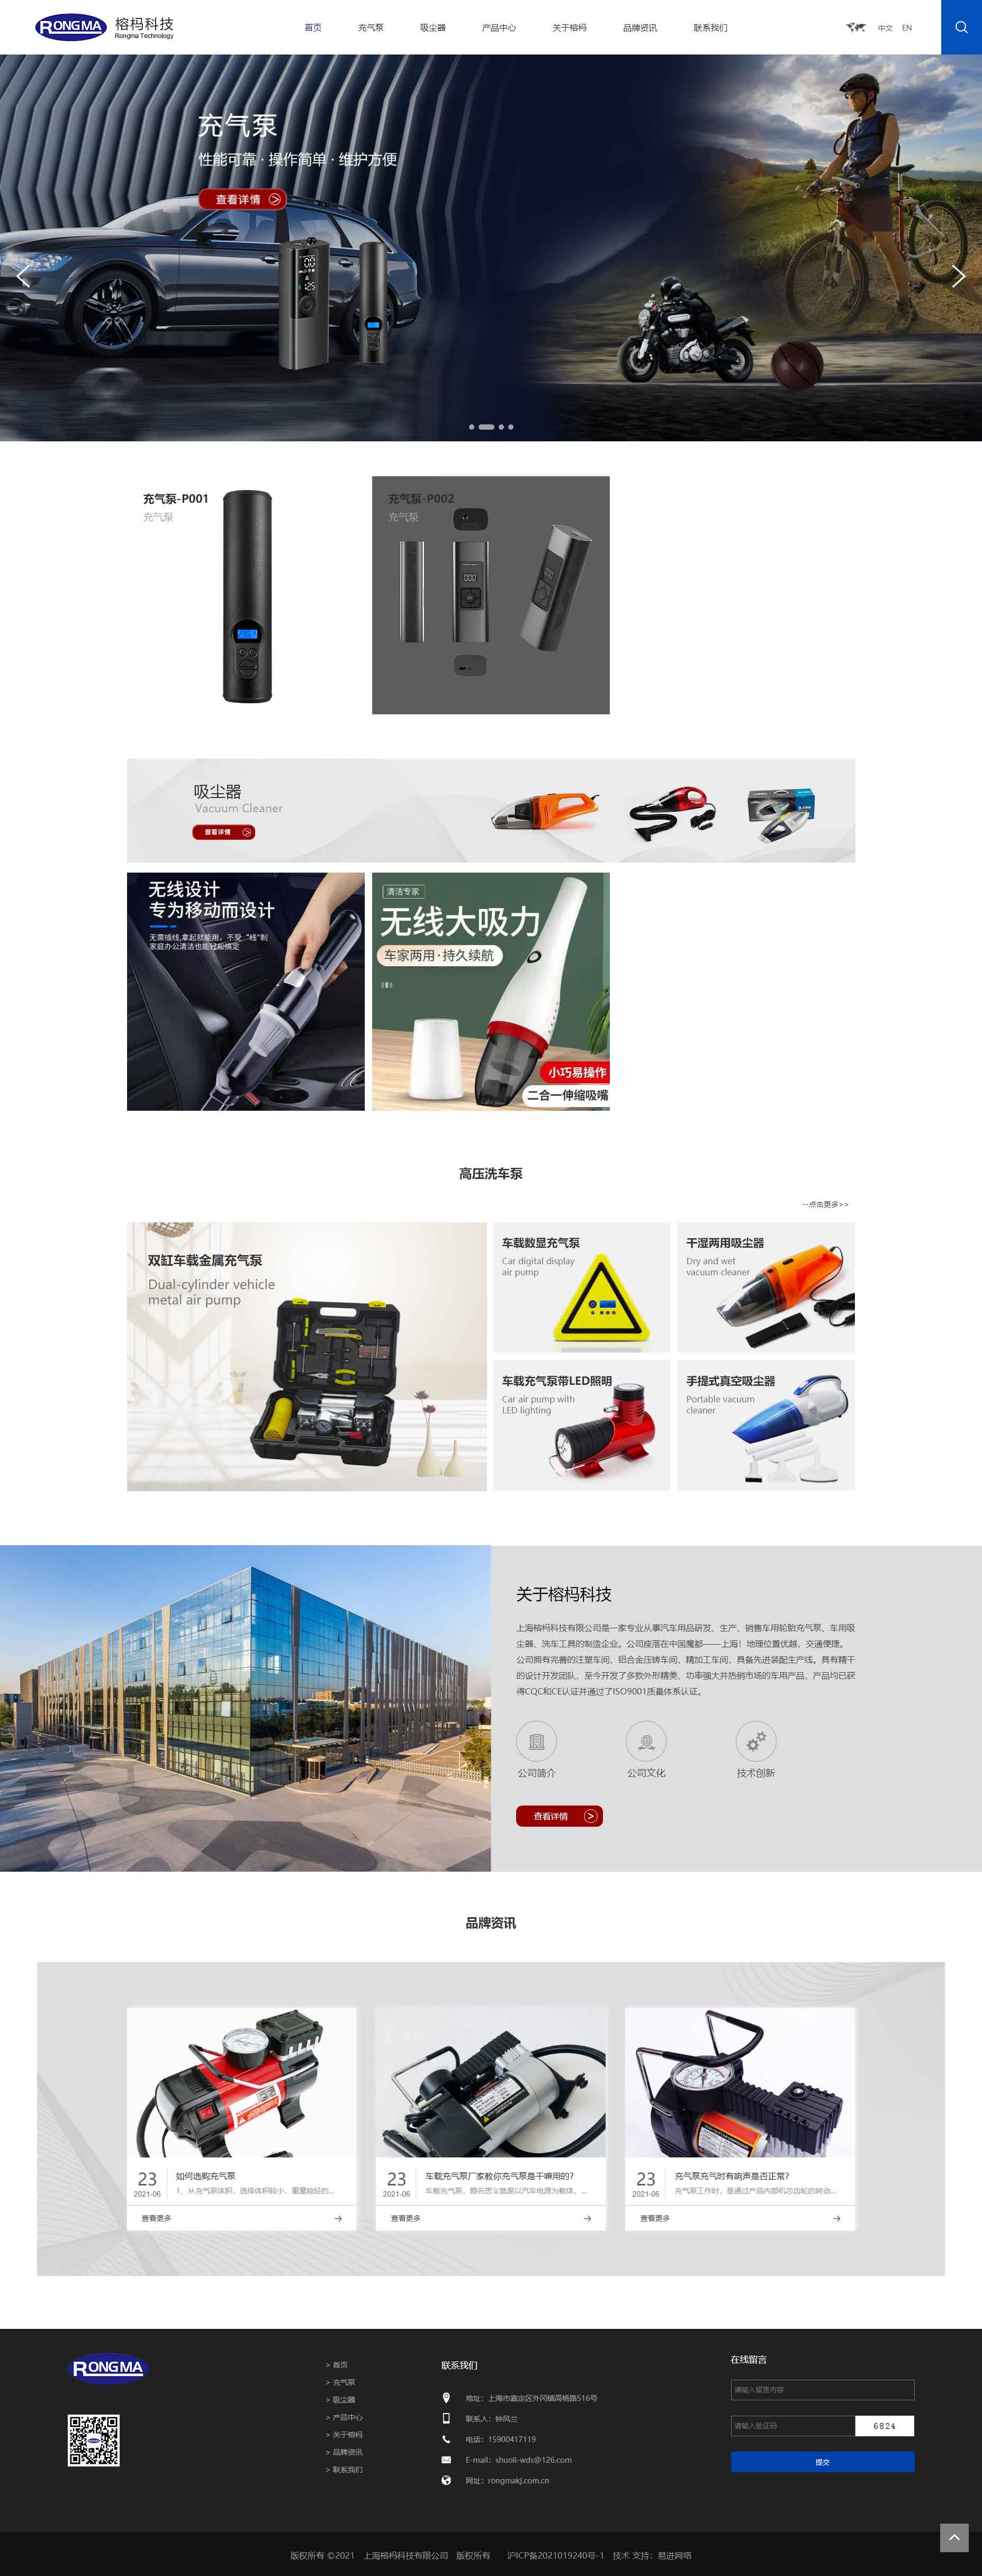 上海榕杩科技有限公司-充气泵,吸尘器,其它车载用品.jpg